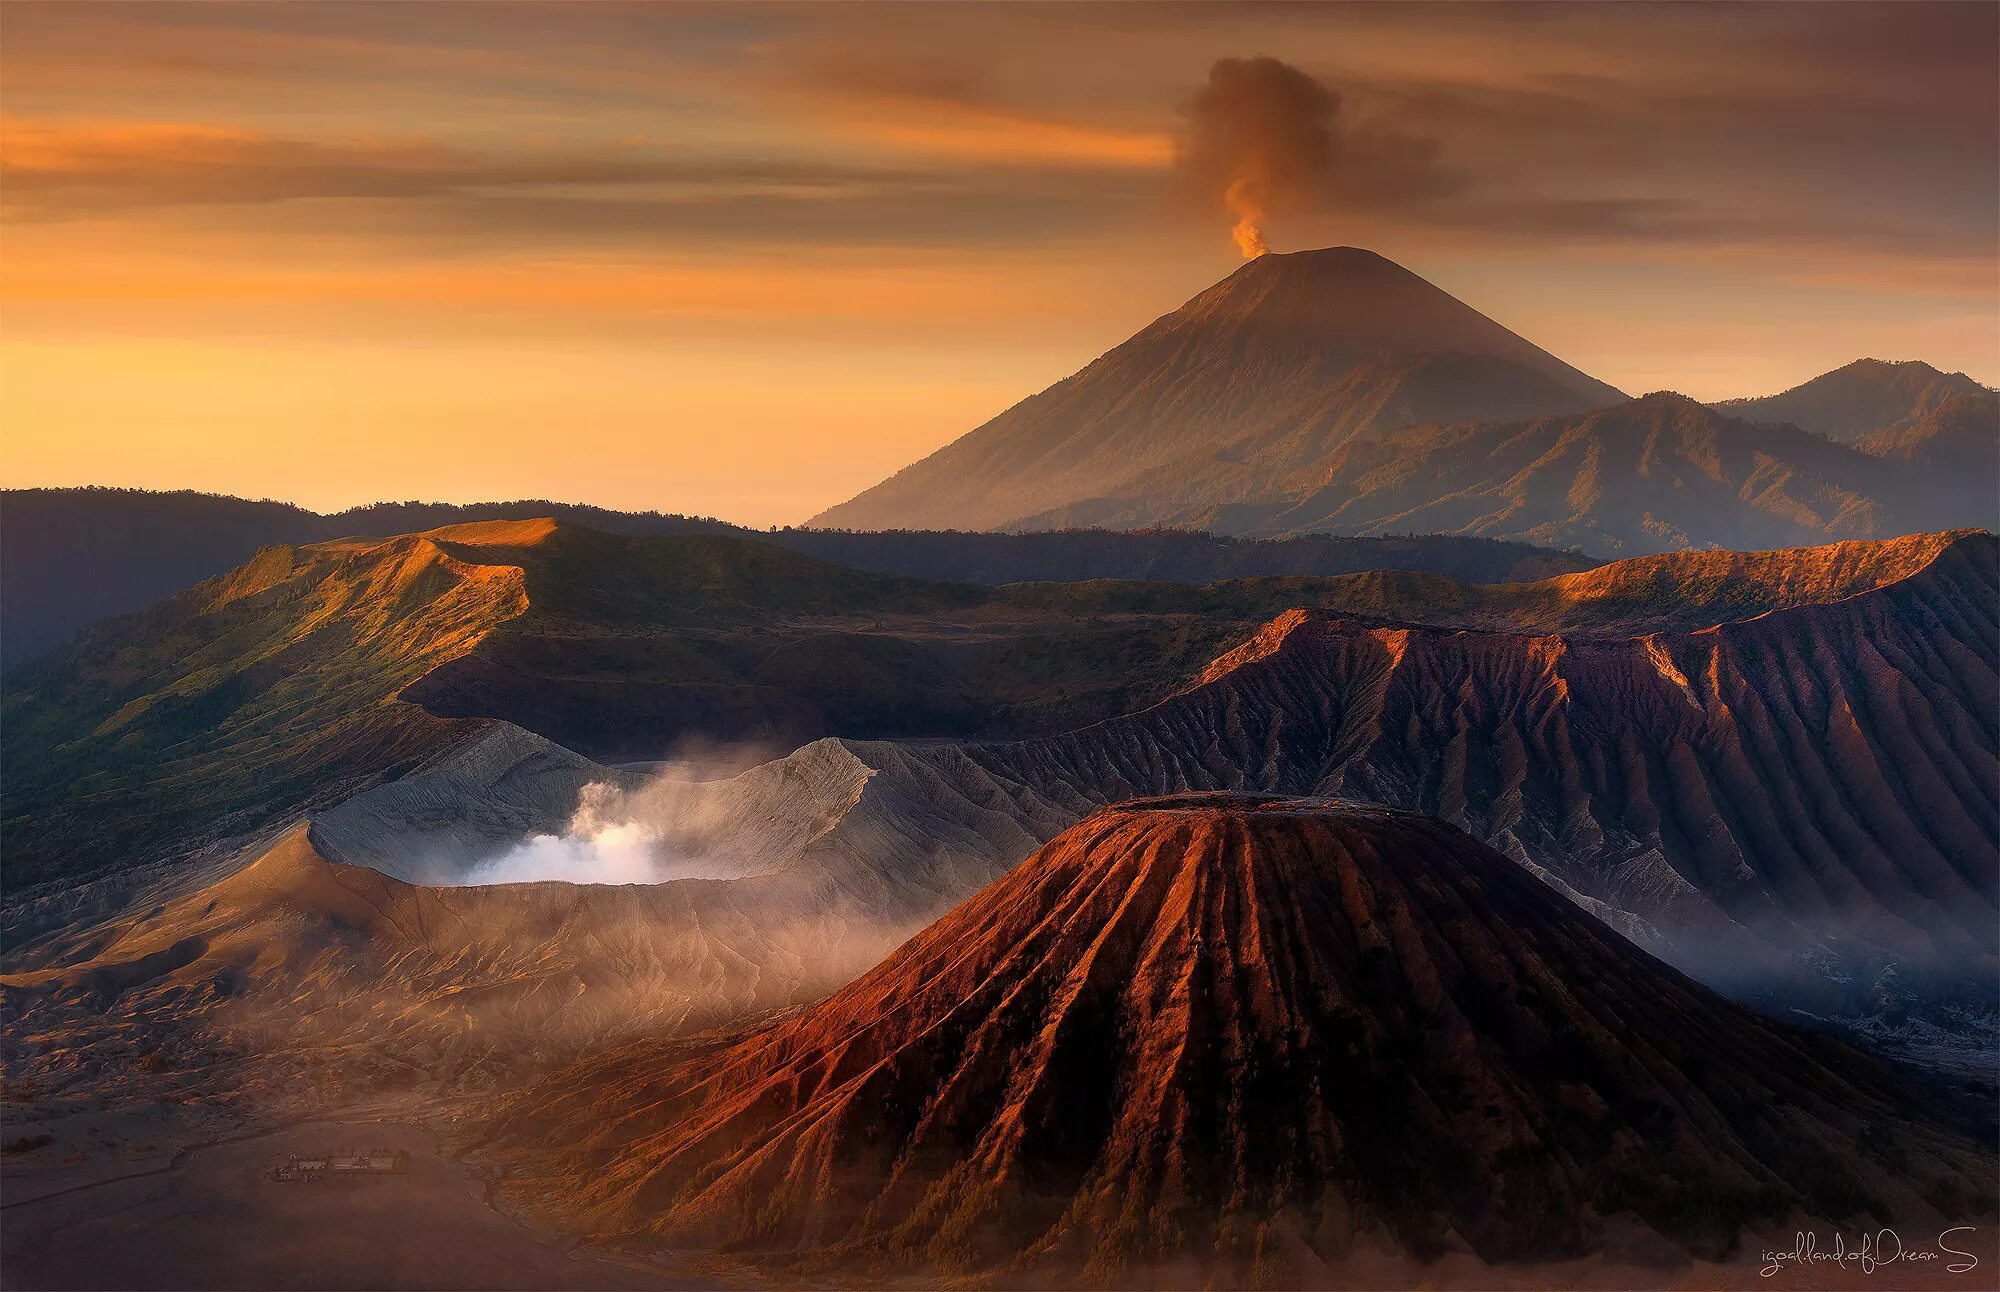 Известные вулканы на земле. Гора Бромо Индонезия. Национальный парк «Бромо-Тенгер-семеру» - Индонезия. Вулкан Бромо, Индонезия, острова Ява. Гора Бромо вулкан в Индонезии.